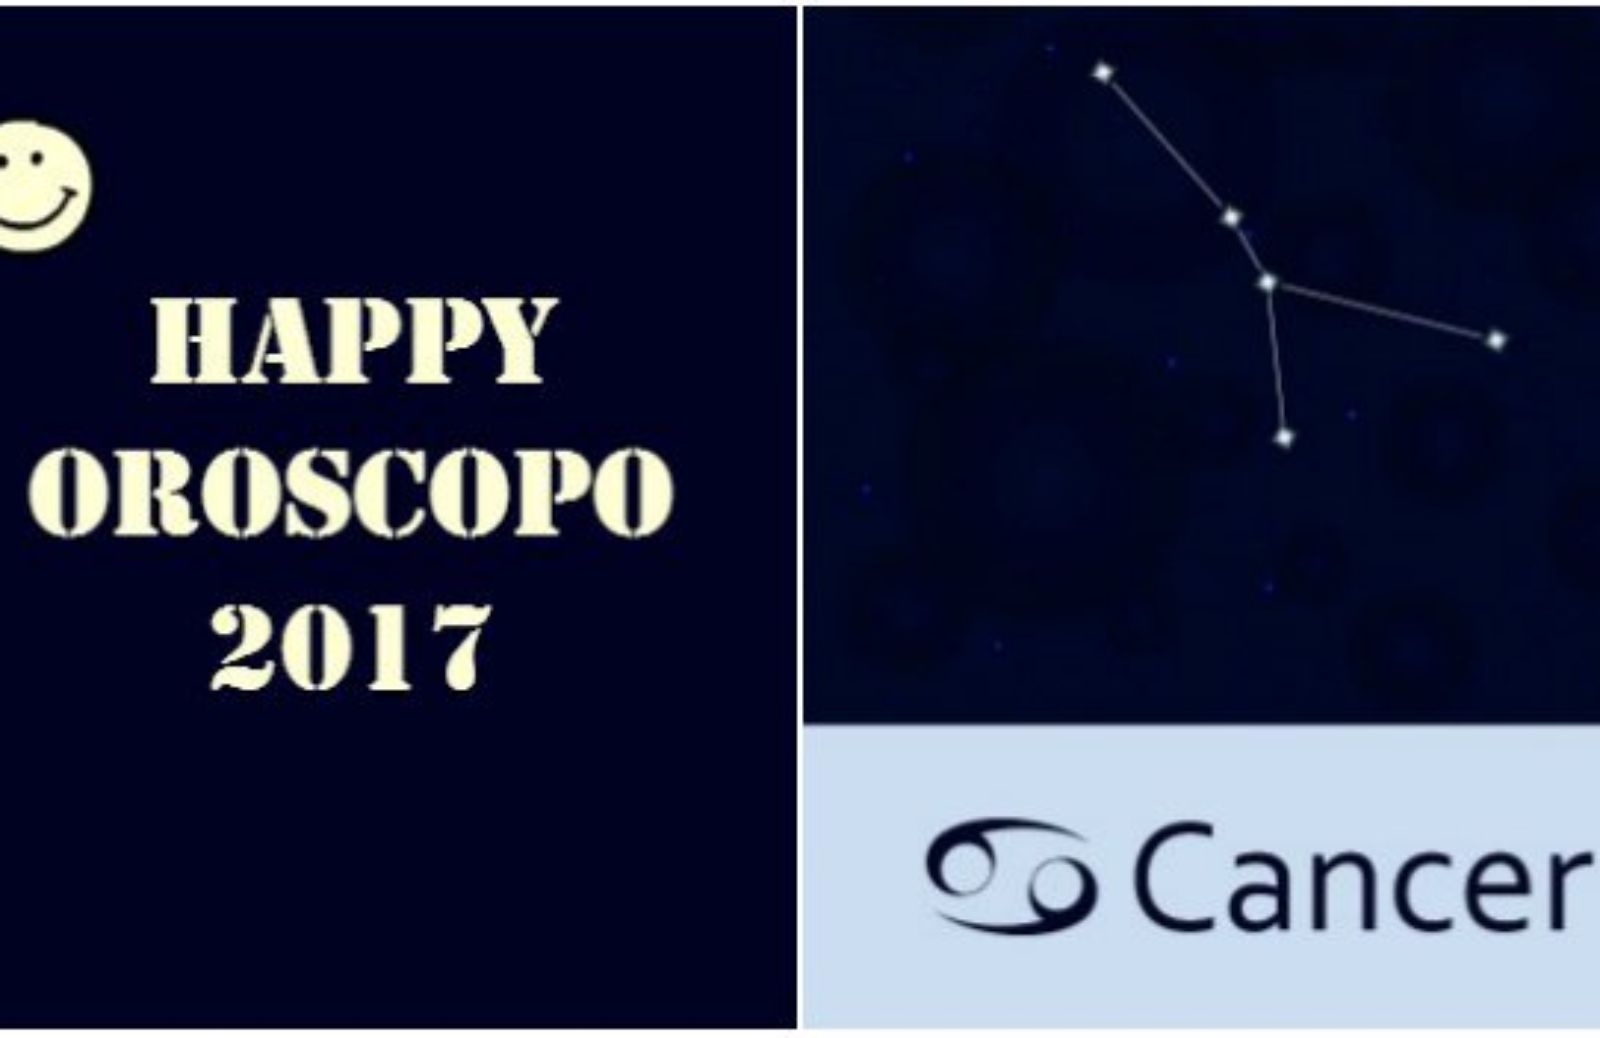 Happy Oroscopo 2017: il segno del Cancro